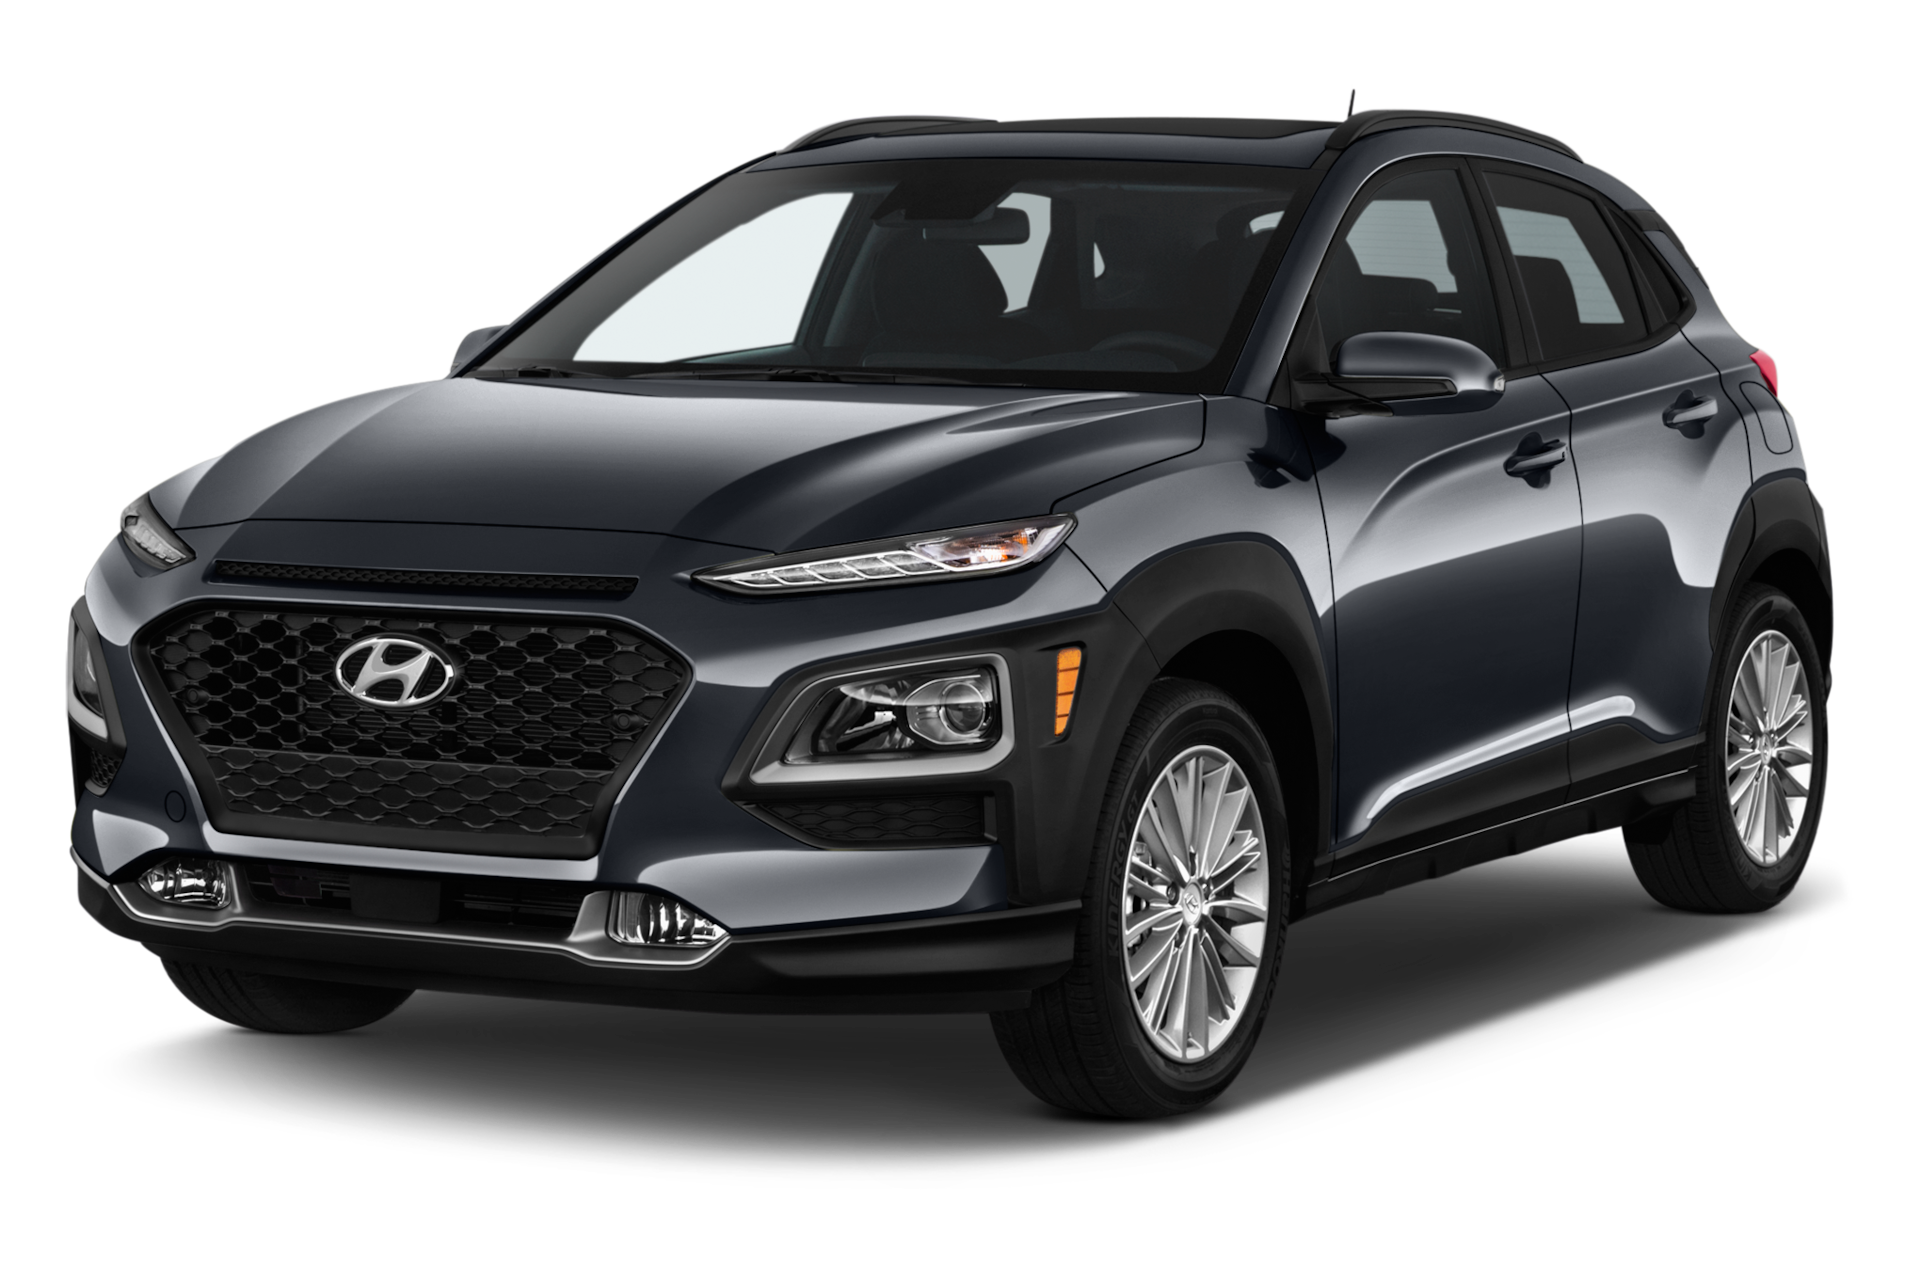 2019 Hyundai Kona Prices, Reviews, and Photos - MotorTrend